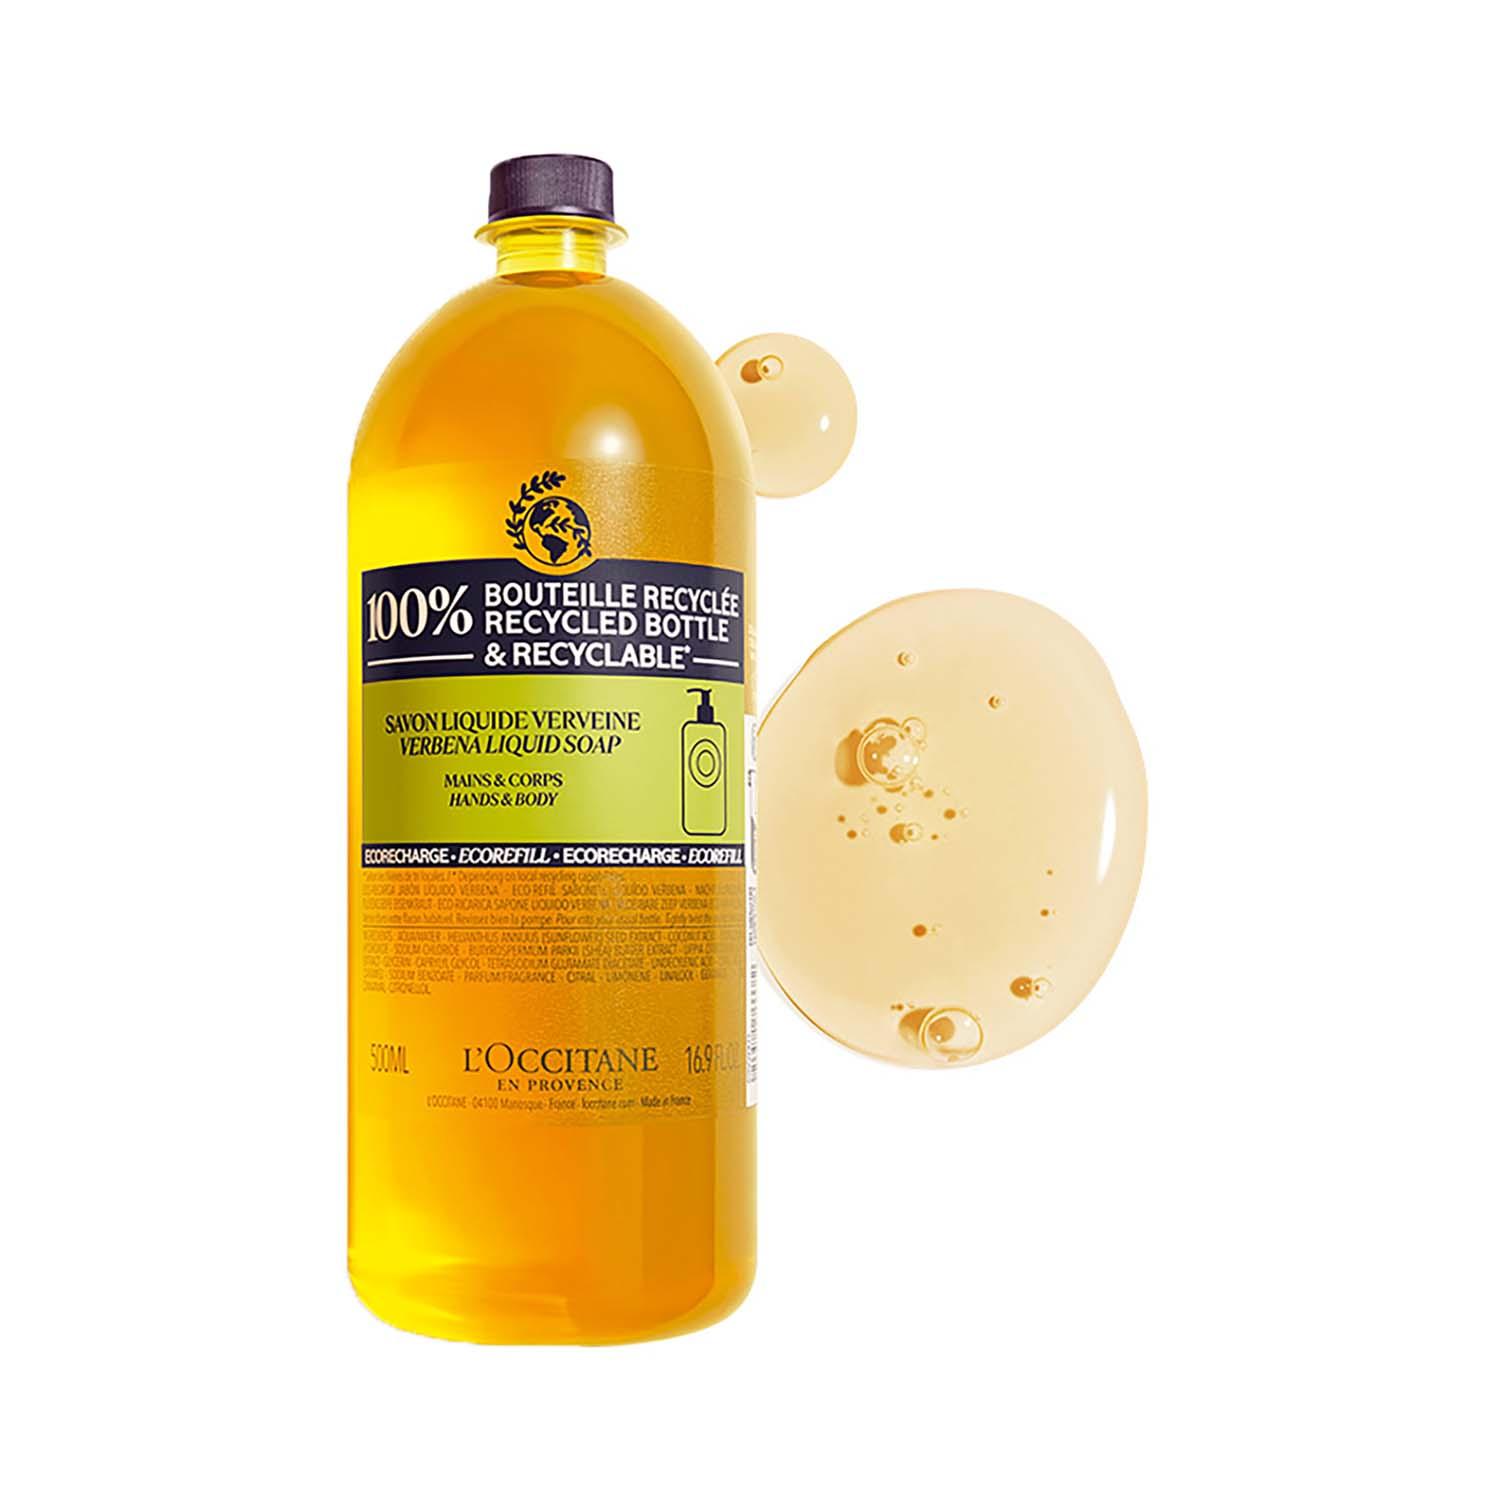 L'occitane Hands and Body Verbena Liquid Soap Refill (500 ml)